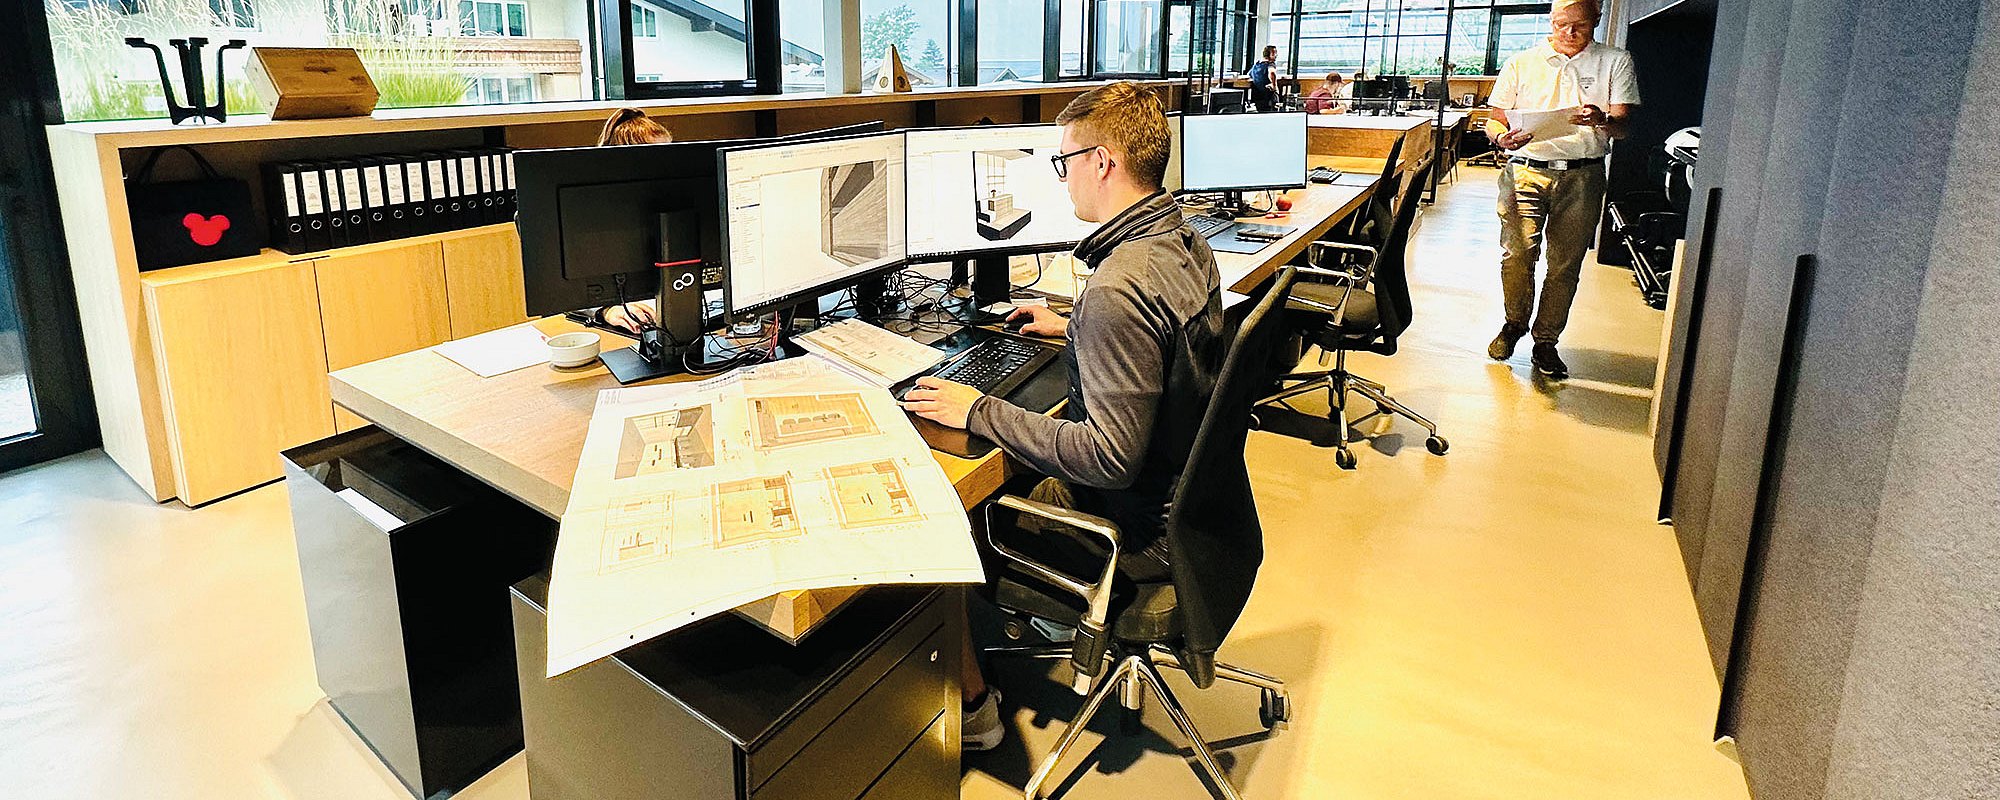 Großraumbüro mit Fensterfront und offenen Schreibtischplätzen mit hellem Boden und schwarzen Schreibtischen mit Holzplatte. Mitarbeiter arbeiten an den Computern mit Plänen auf den Schreibtischen.